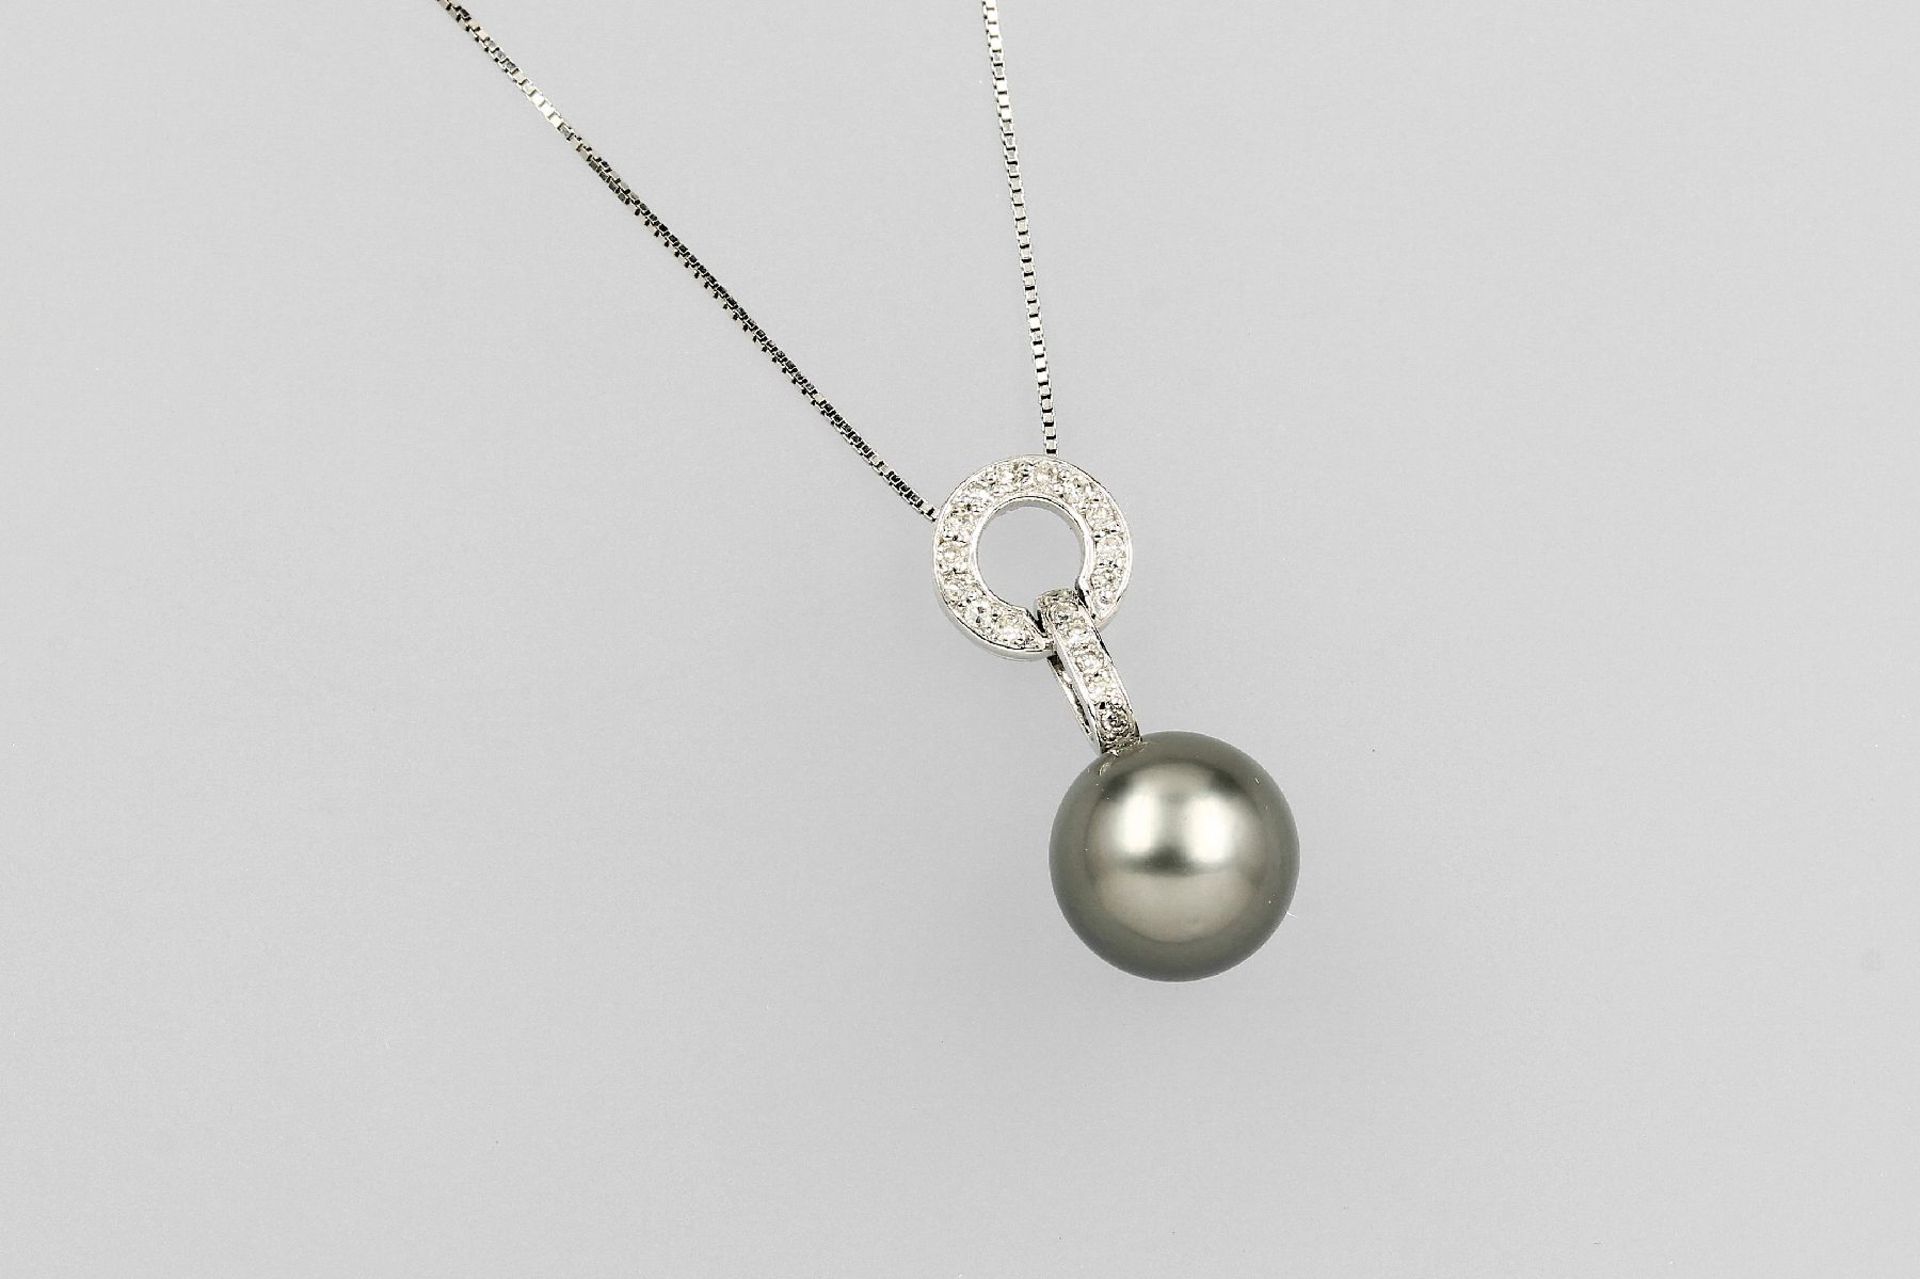 Anhänger mit Tahitizuchtperle und Diamanten, WG 585/000, graue Perle, D. ca. 10 mm, oberhalb bes.